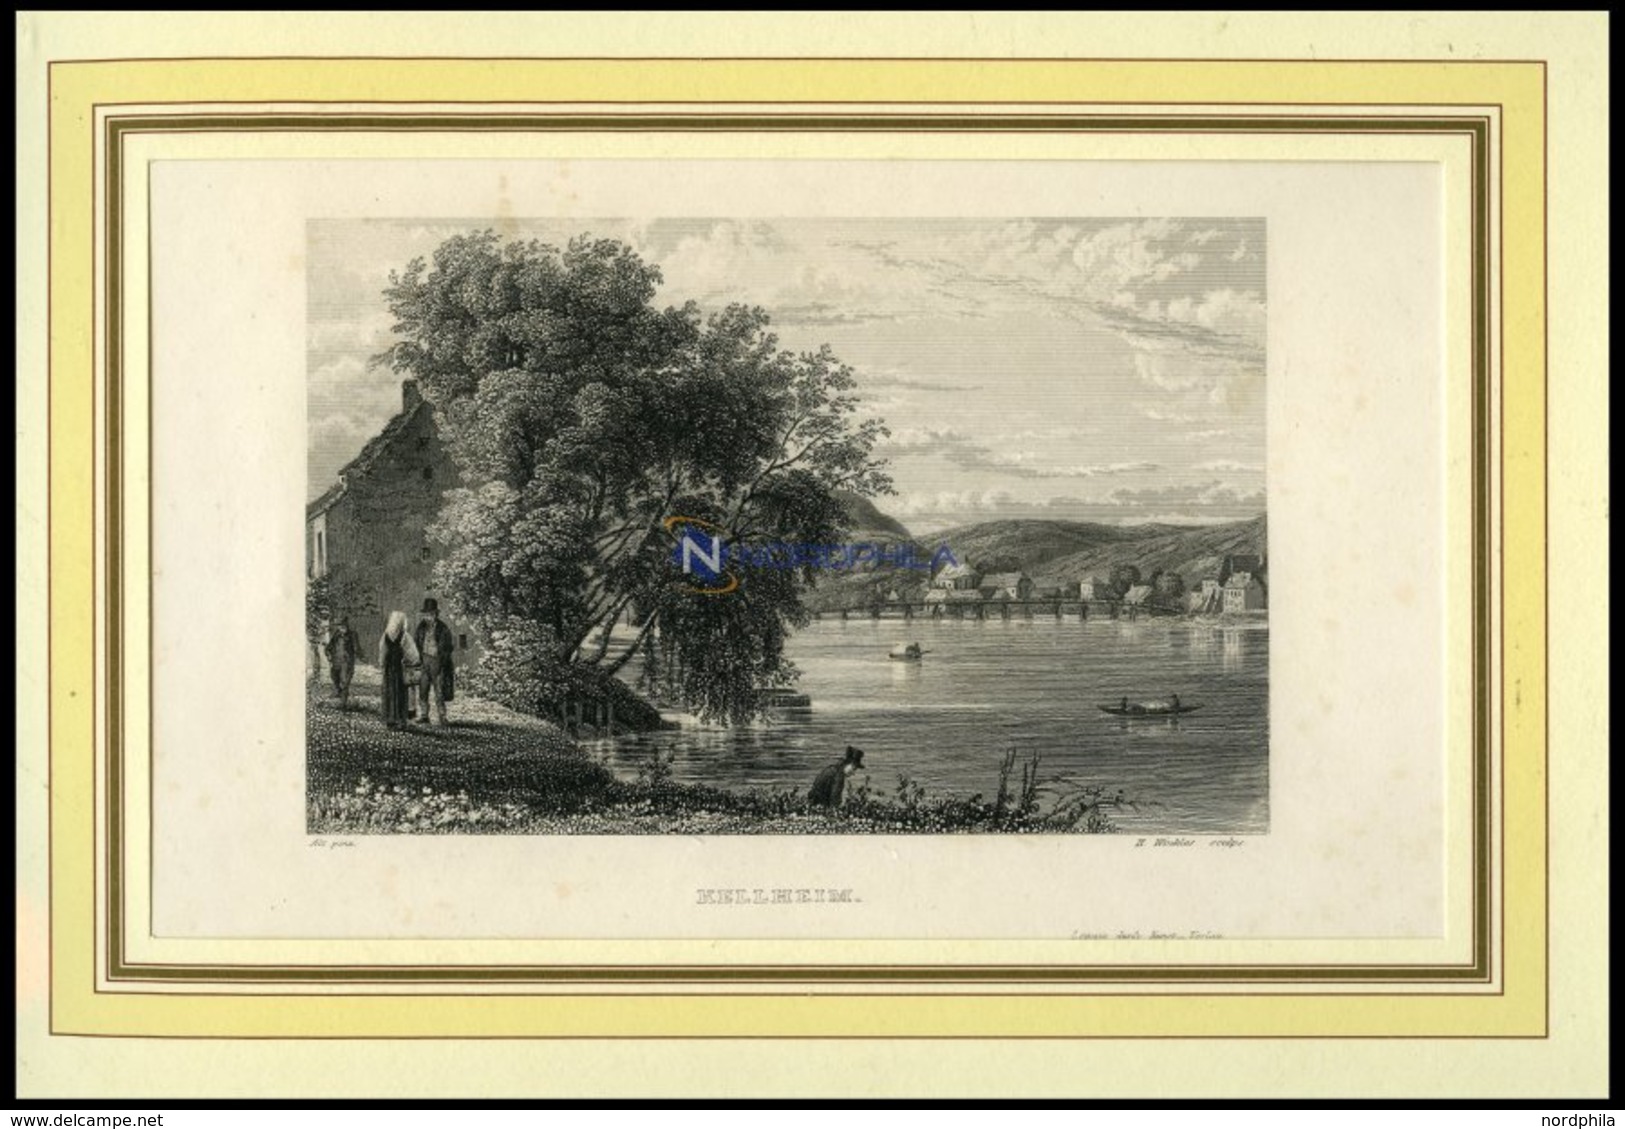 KELHEIM, Gesamtansicht, Stahlstich Von ALt/Winkles Um 1840 - Lithographies